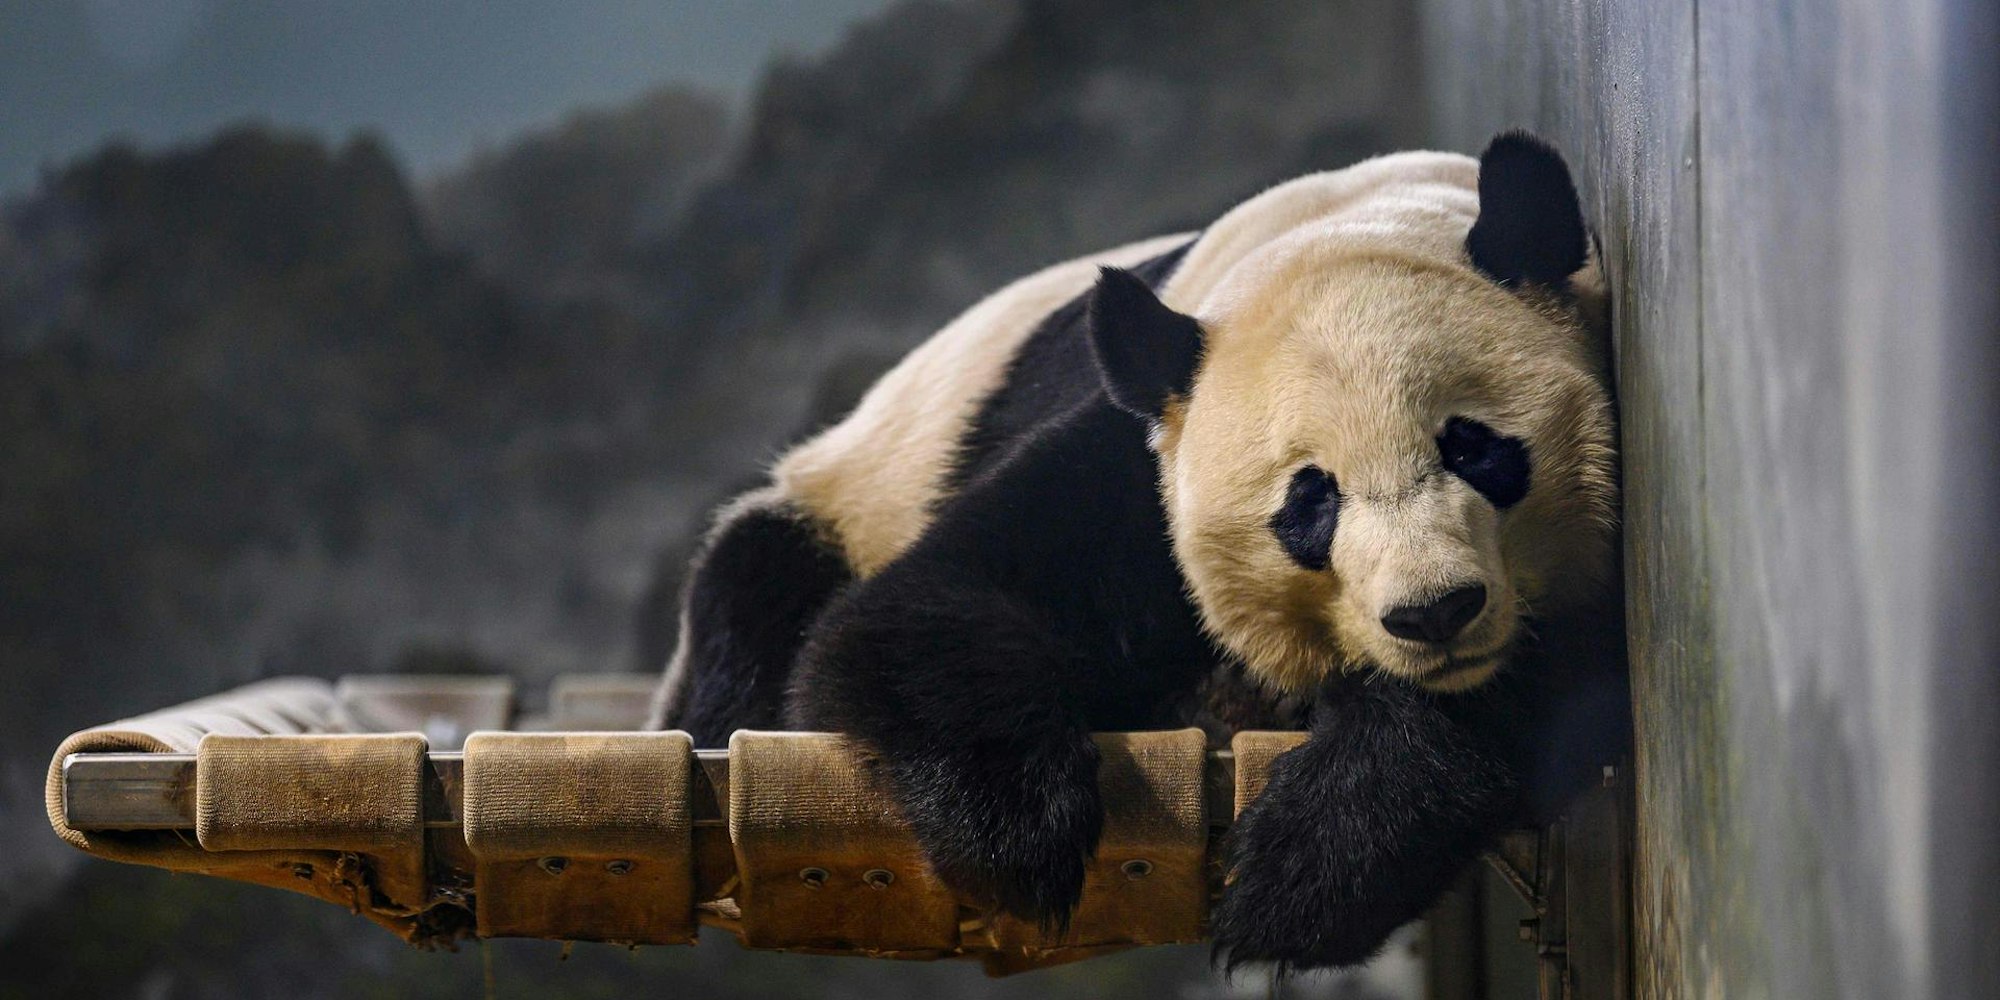 Panda Bei Bei